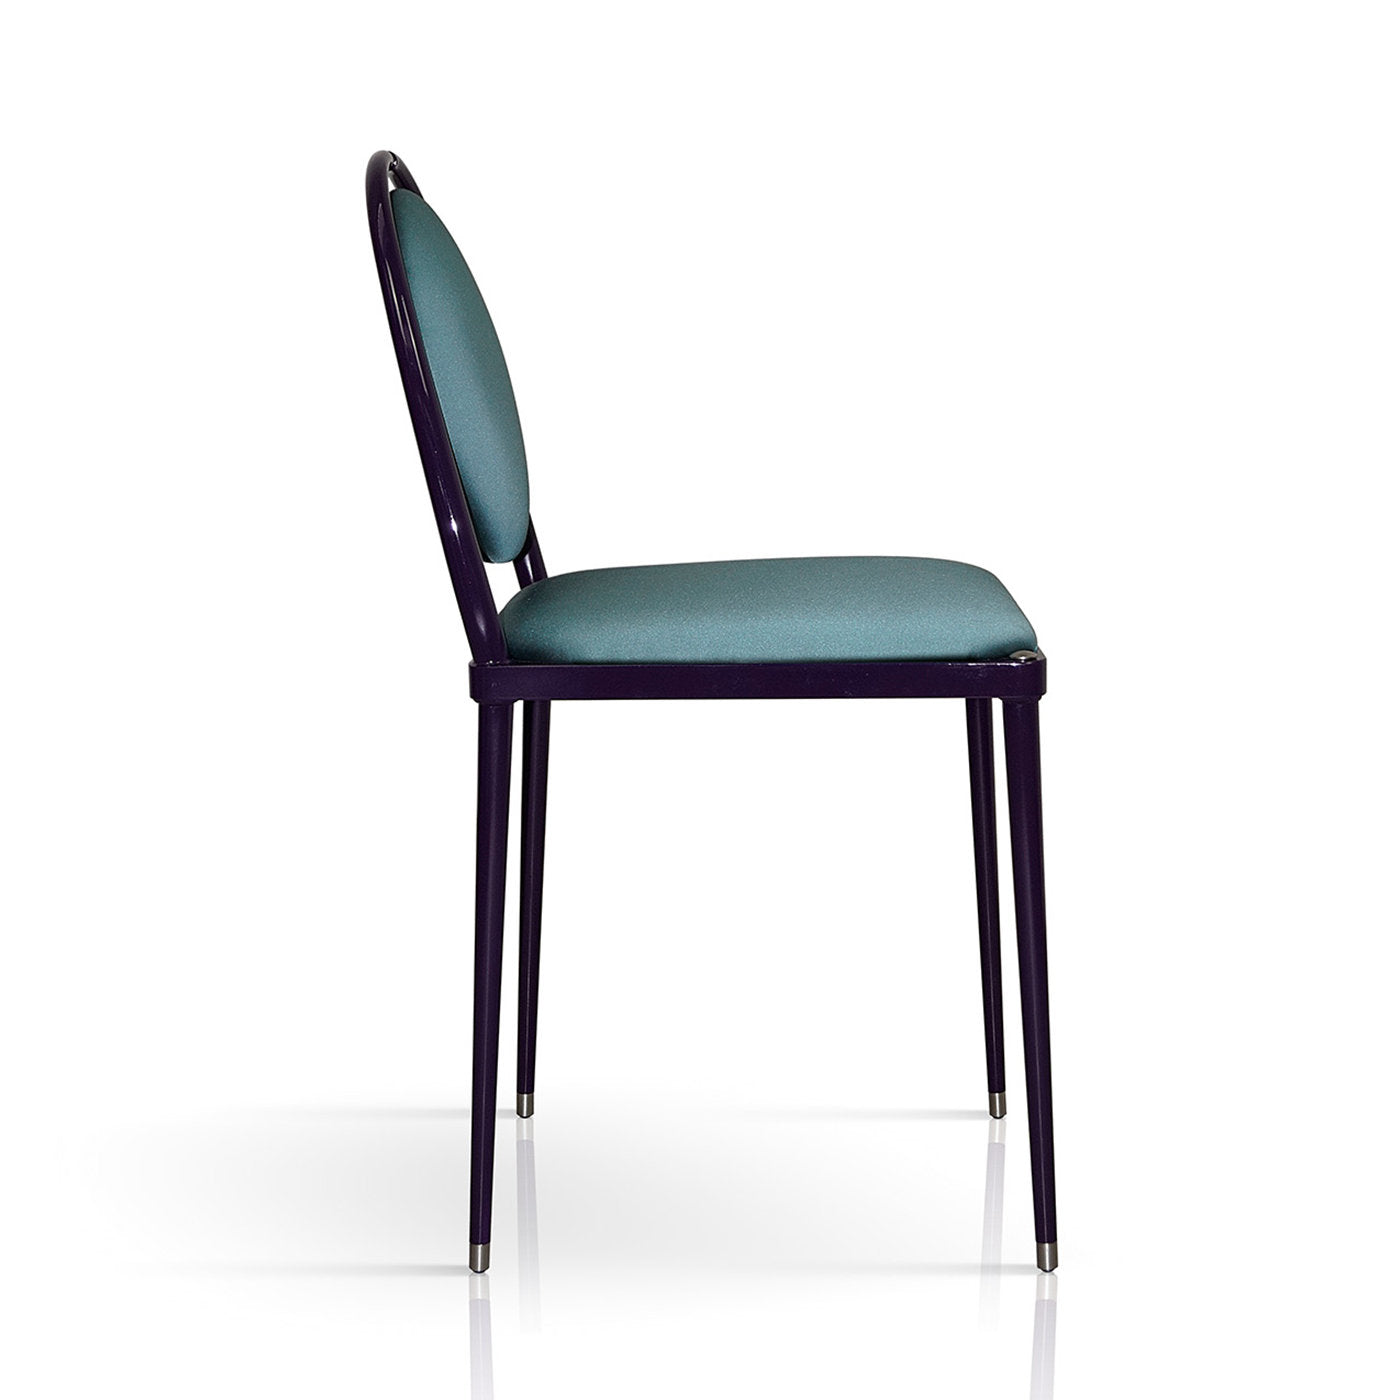 Balzaretti Teal Blue Chair - Alternative view 1